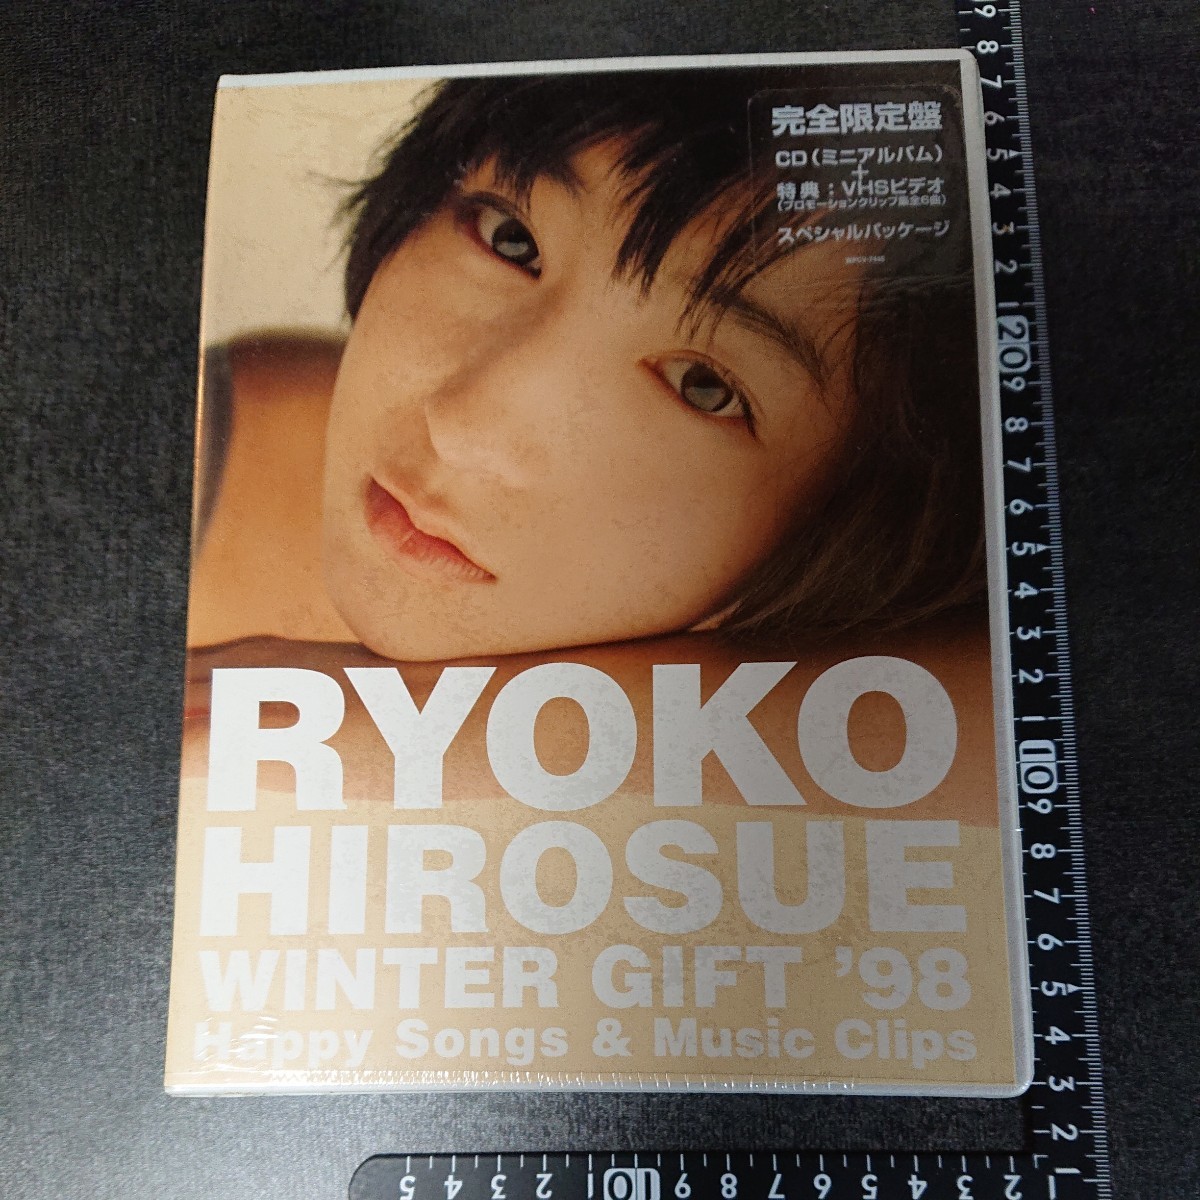  новый товар Hirosue Ryouko winter подарок ´98 совершенно ограничение запись специальный упаковка подлинная вещь 